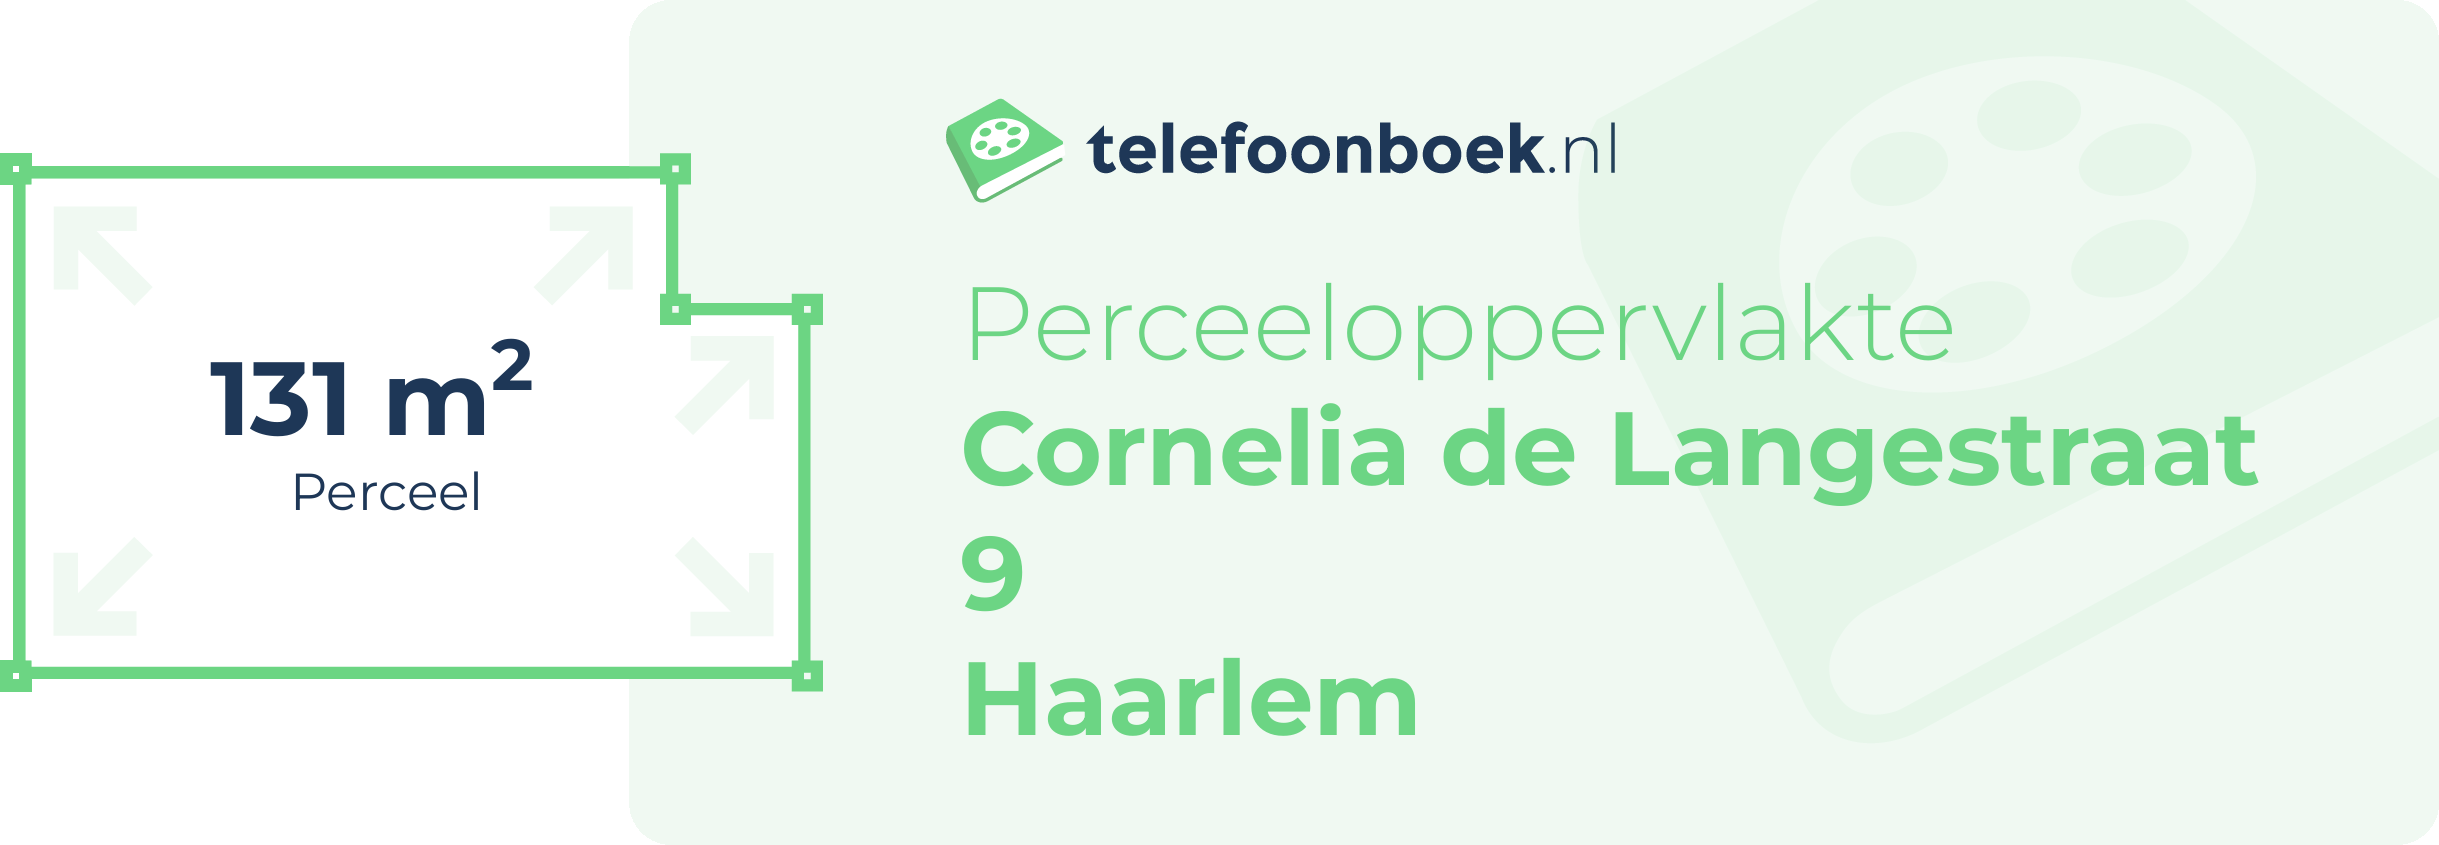 Perceeloppervlakte Cornelia De Langestraat 9 Haarlem